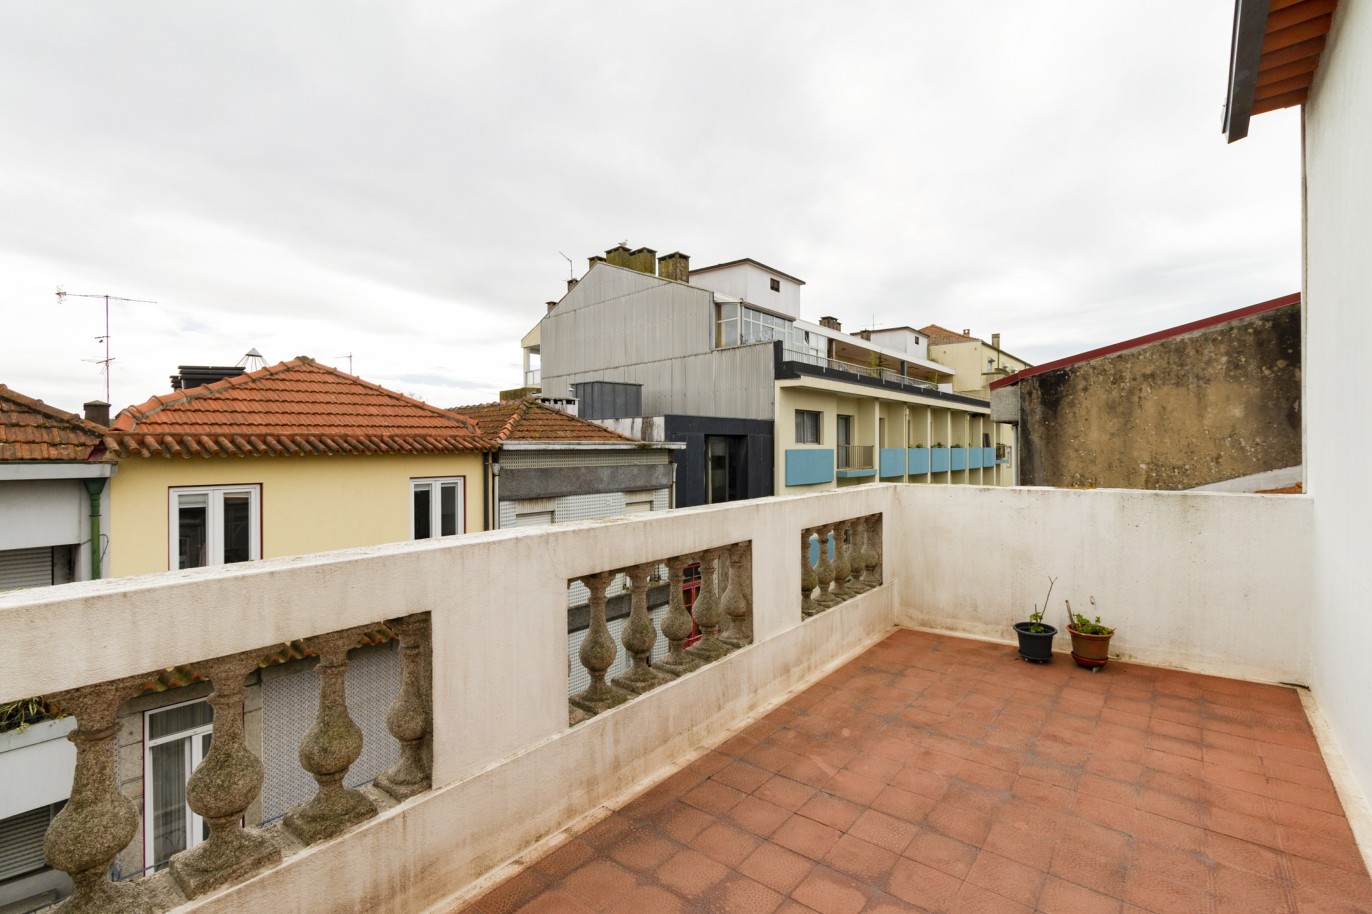 Duplex-Wohnung mit Terrasse, zu verkaufen, in Bairro das Artes, Porto, Portugal_220045